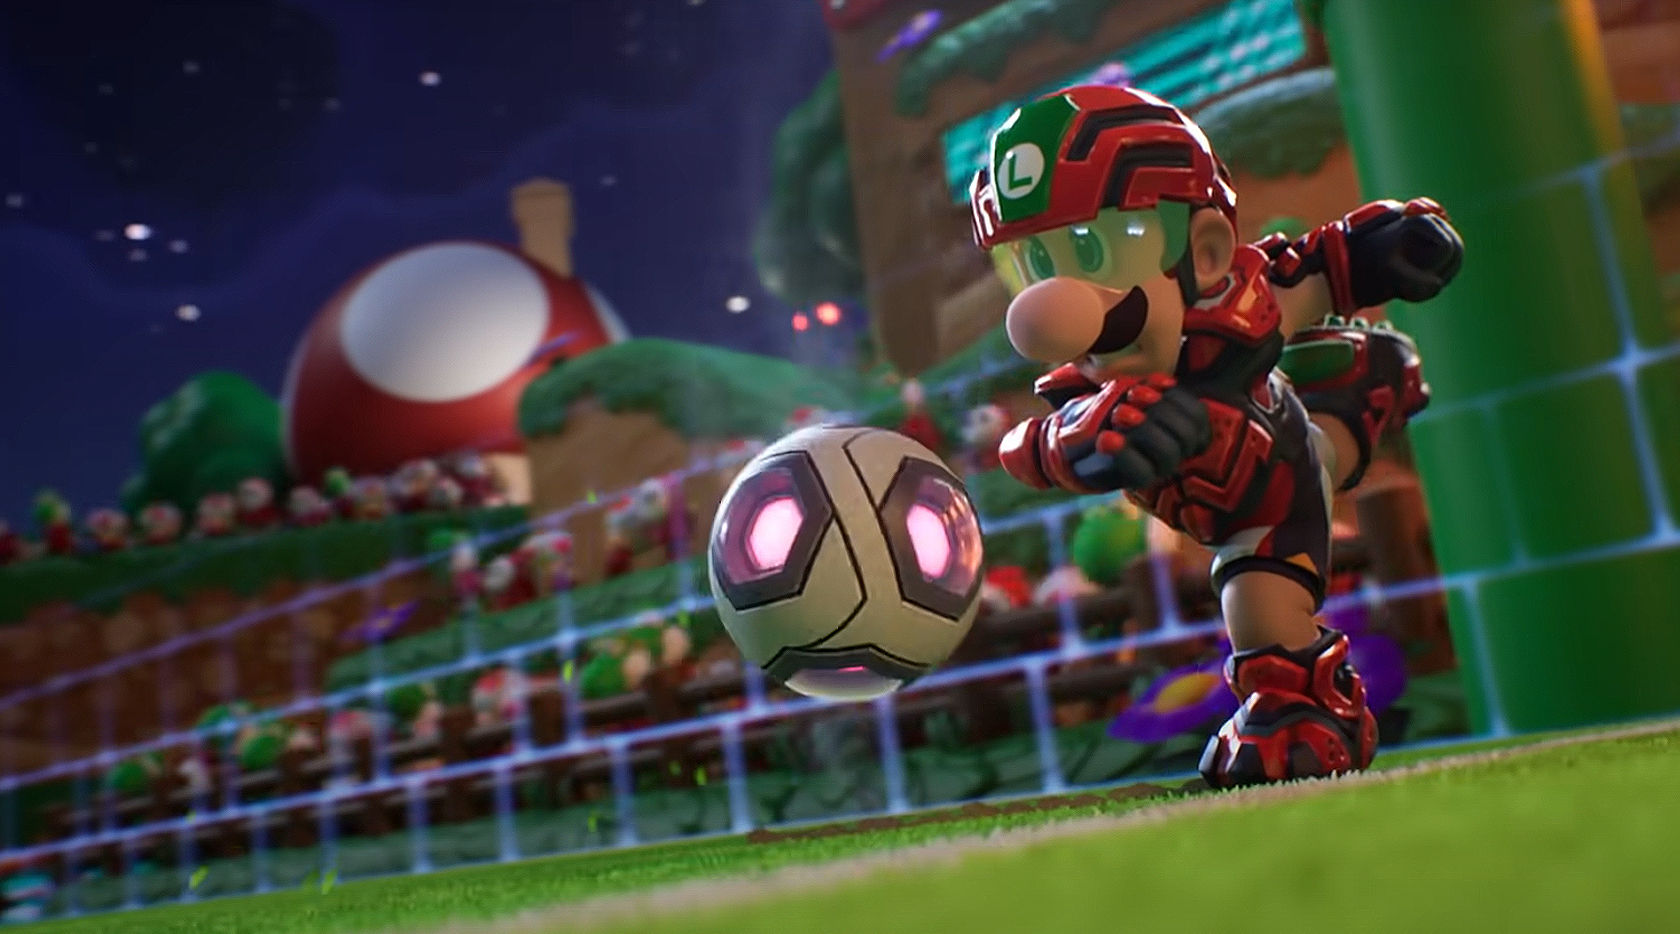 Mario Strikers Batalla Liga Luigi y Bola